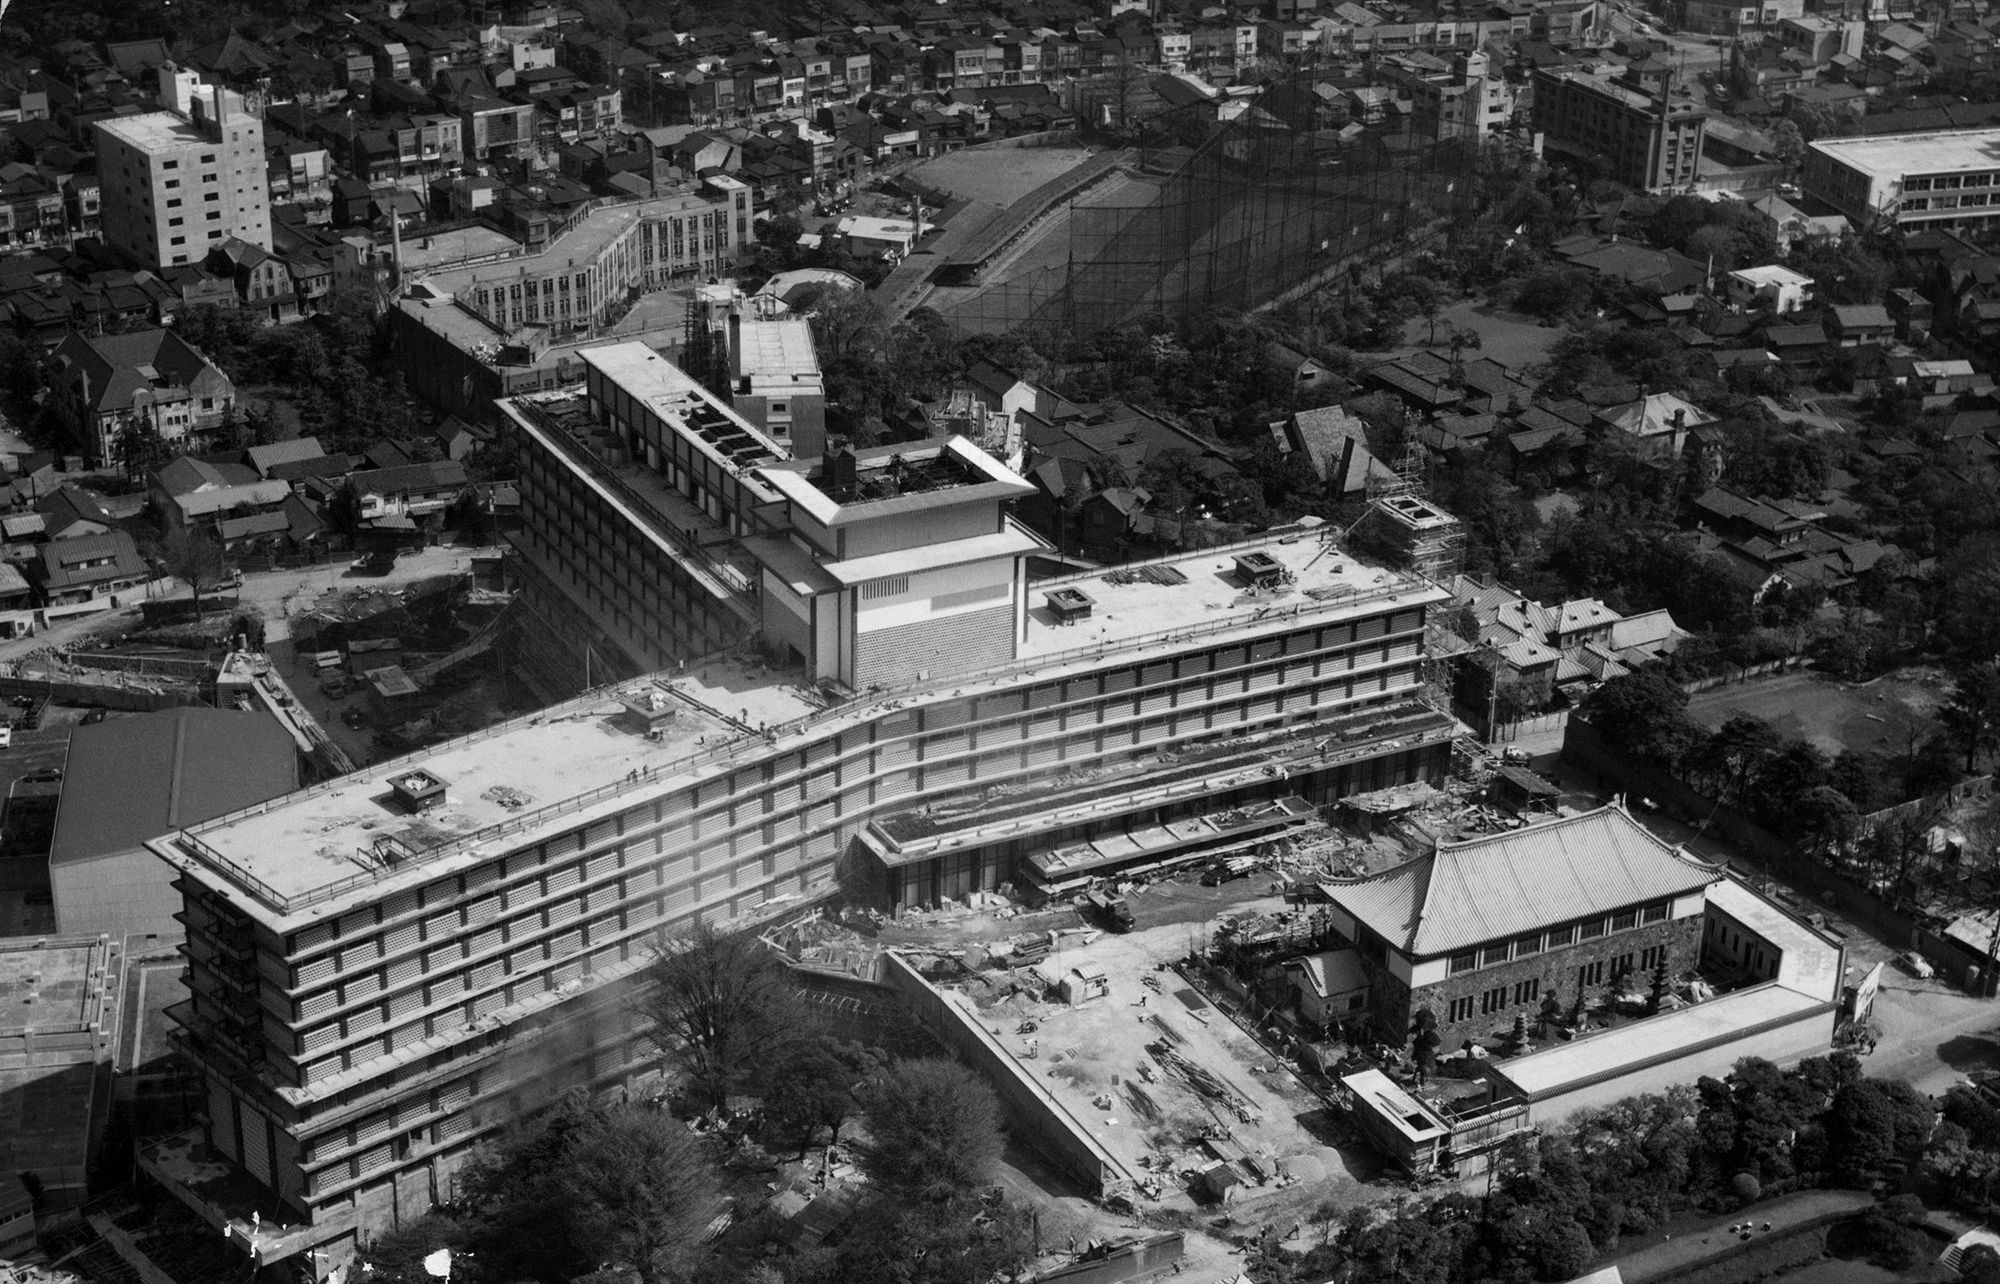 １年半の工期を経て完成したホテルオークラの全景。東翼、南翼、北翼の三翼からなる三ツ矢式建築はホテル初。